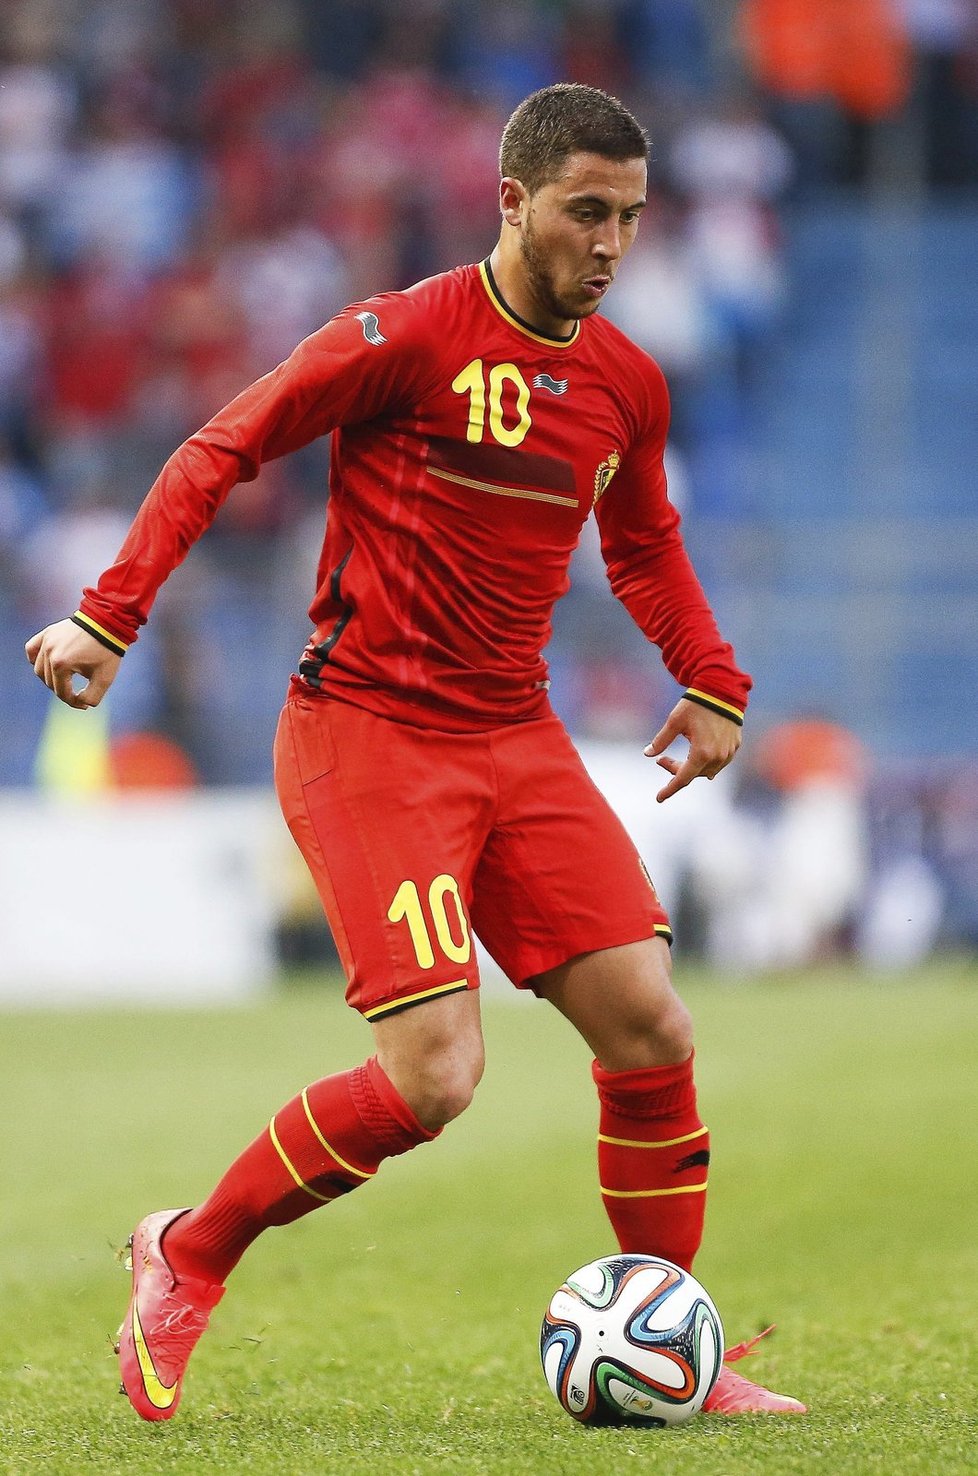 Belgie je našlapaná skvělými mladými fotbalisty. Černého koně turnaje povede především Eden Hazard.